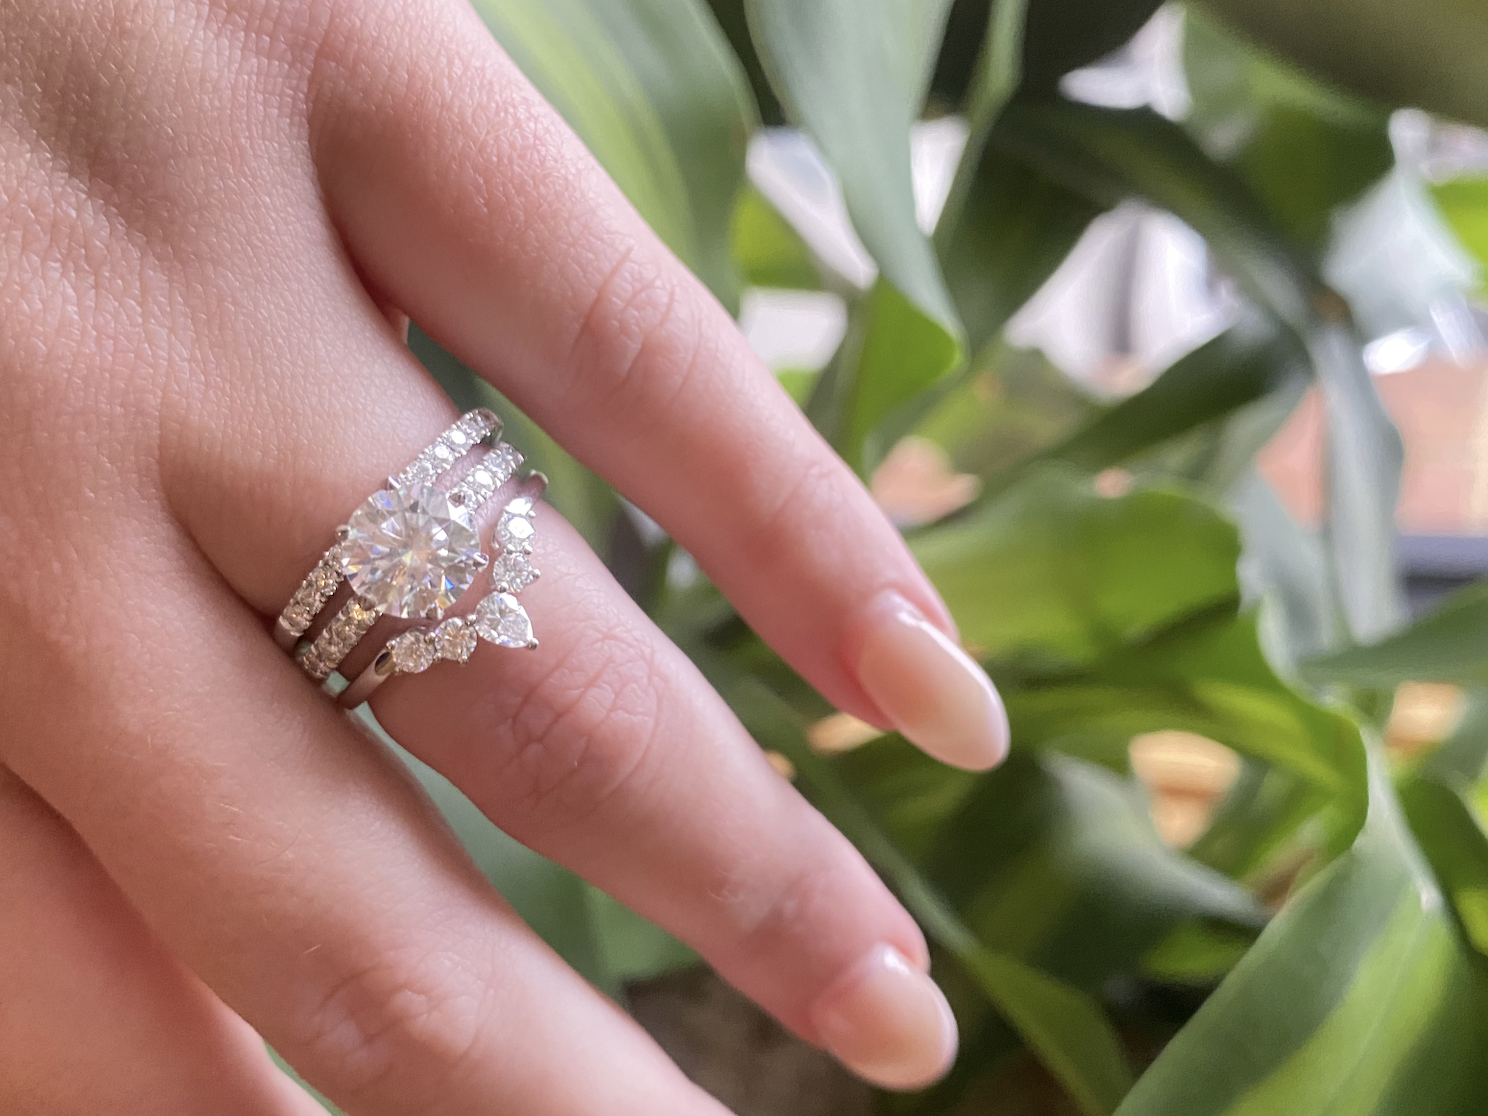 Custom Moissanite Engagement Rings In Melbourne - Ethical Diamond Alternative